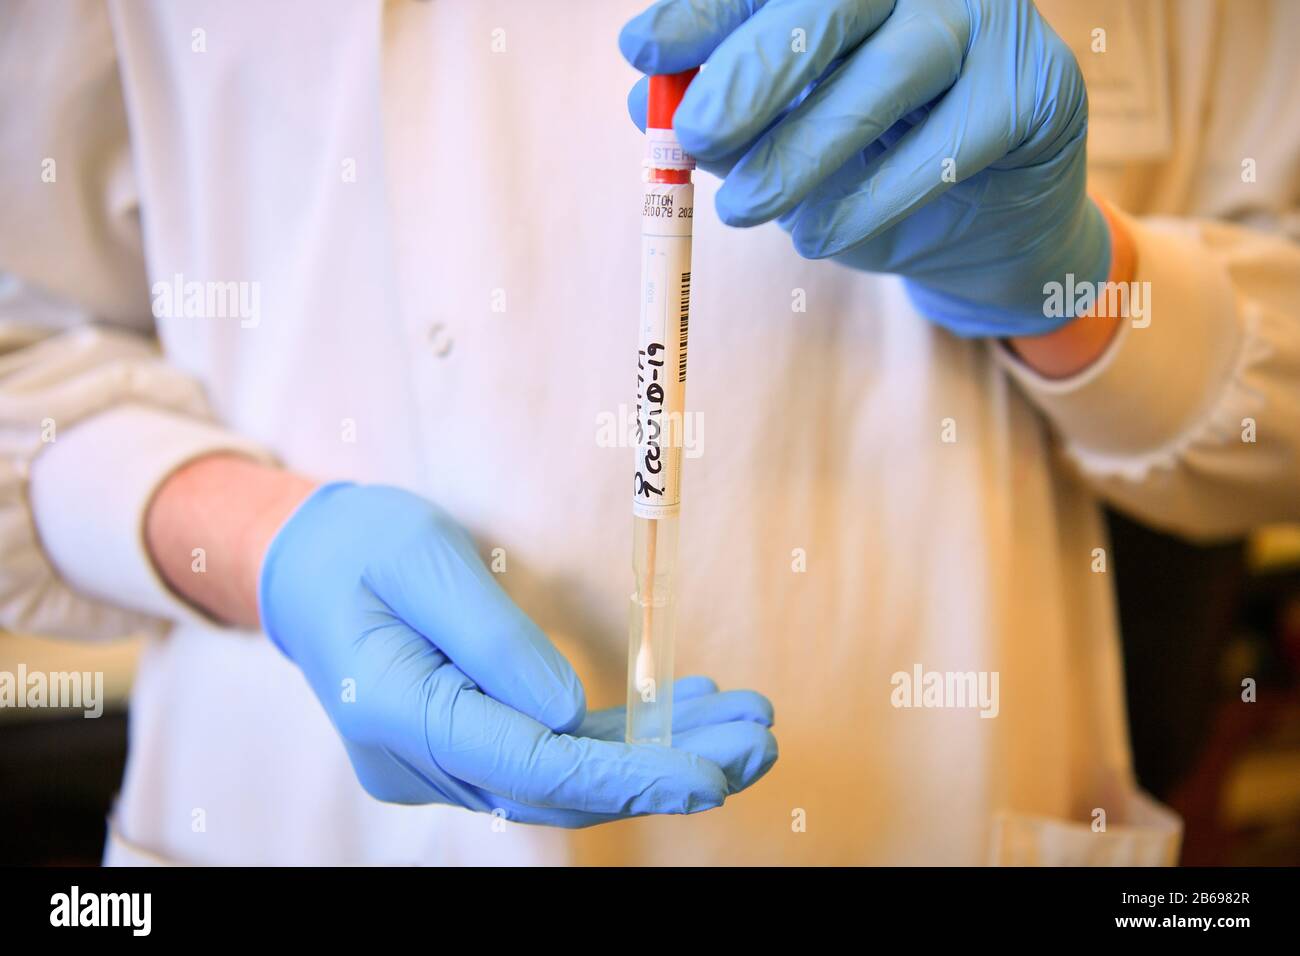 Un écouvillon factice COVID-19 est manipulé à l'intérieur d'un tube stérile scellé lors d'une démonstration par des techniciens de laboratoire qui effectuent des tests de diagnostic du coronavirus dans le laboratoire de microbiologie du Centre spécialisé de virologie de l'hôpital universitaire du Pays de Galles à Cardiff. Banque D'Images